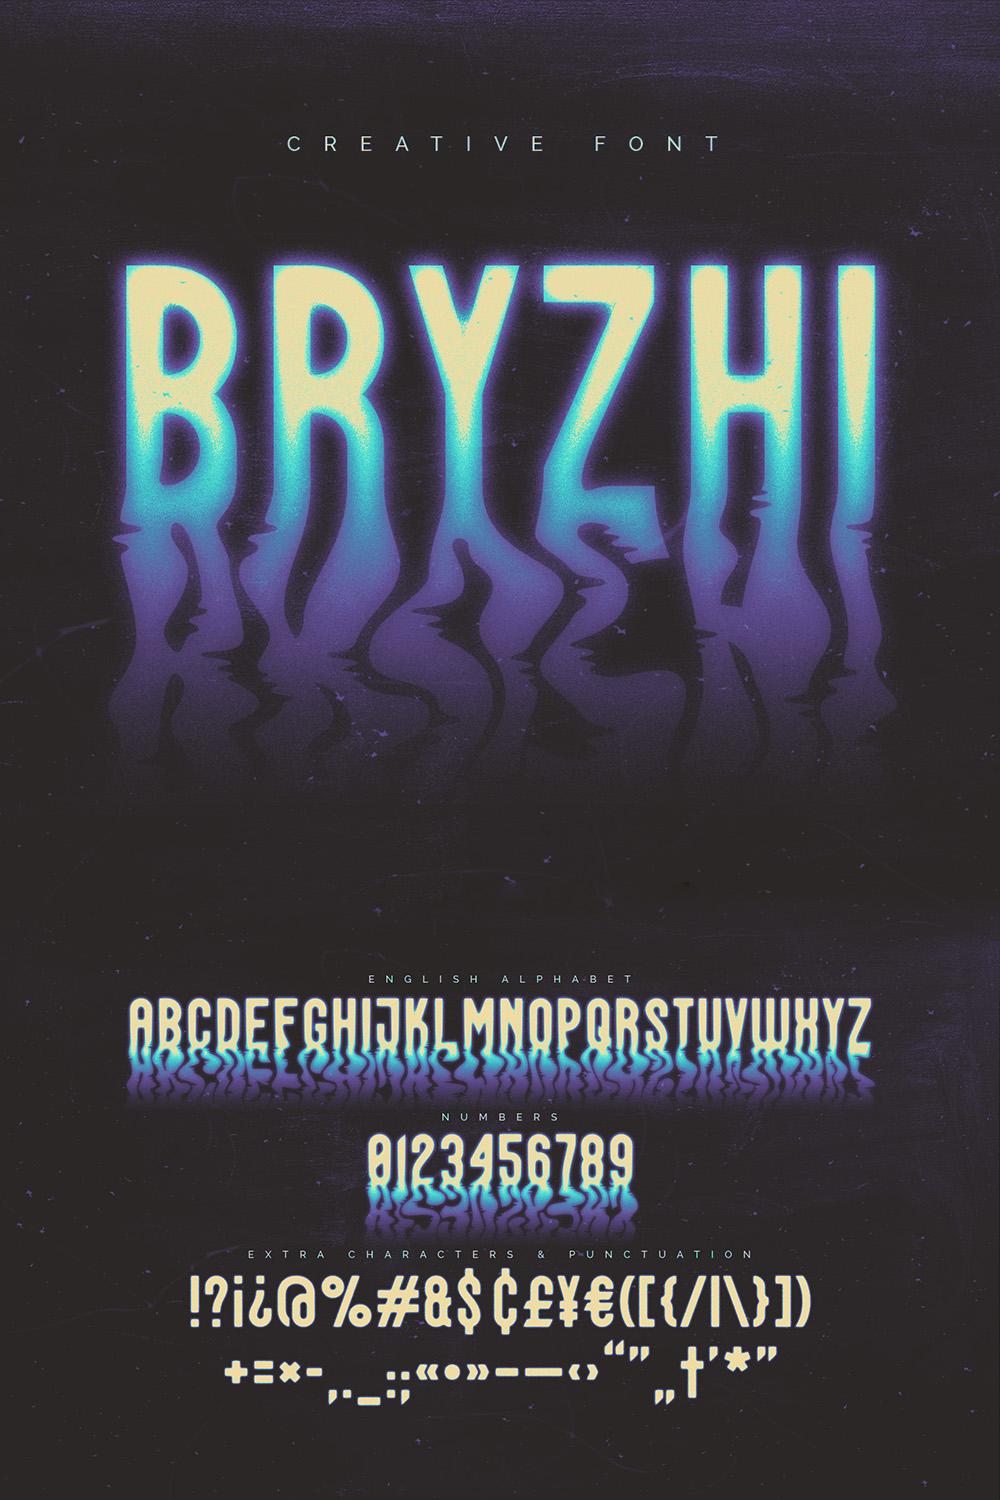 Bryzhi - Creative Font pinterest preview image.